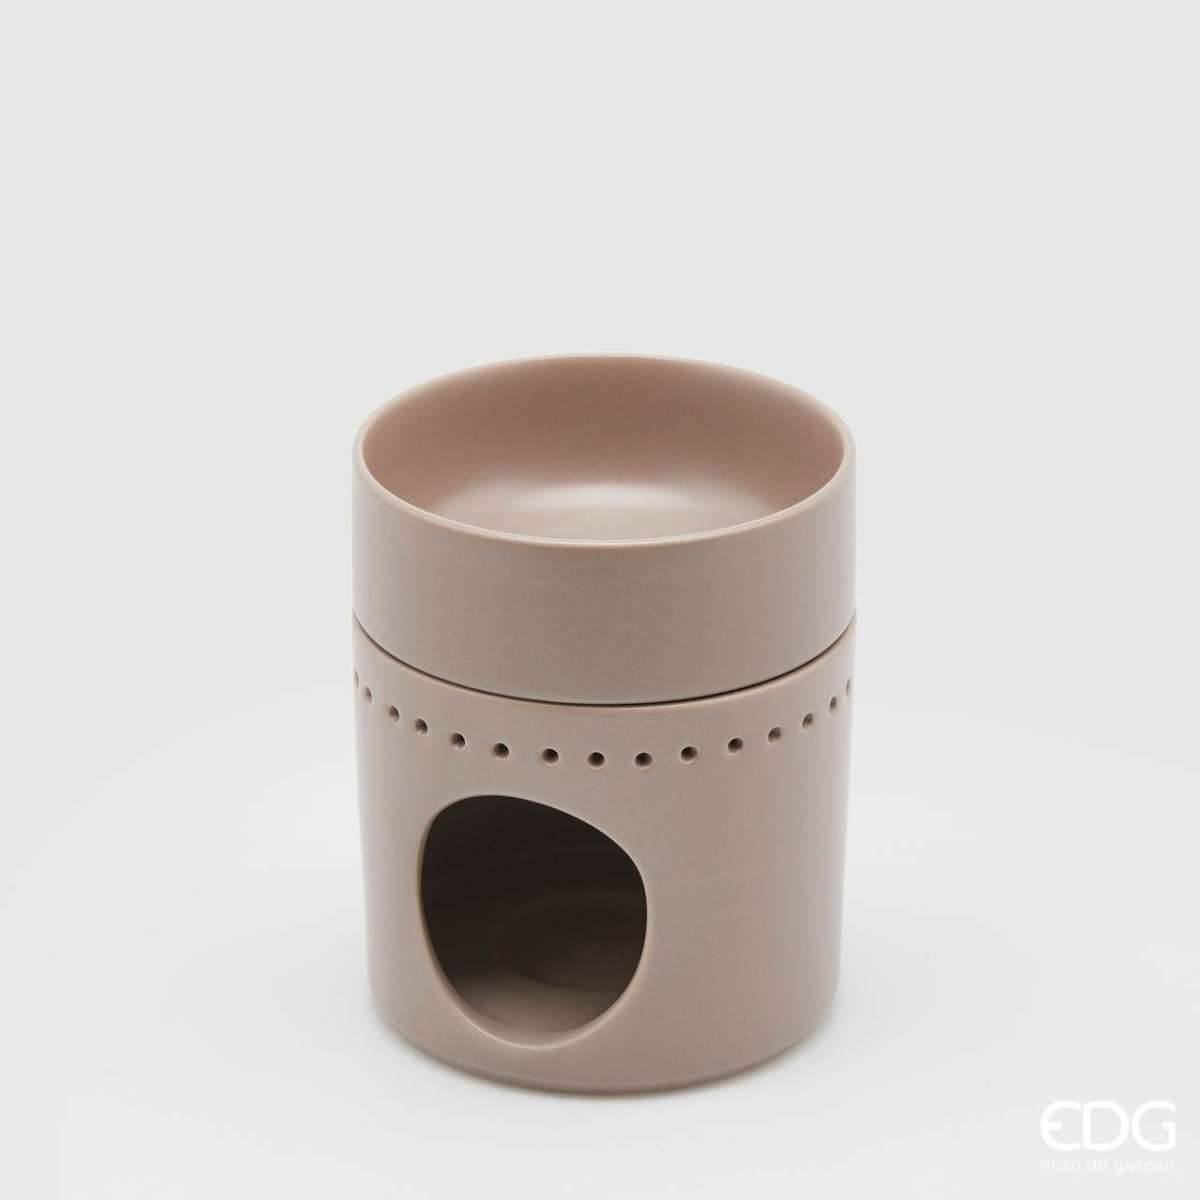 Immagine del prodotto Diffusore Oli essenziali Design in ceramica Beige | EDG Enzo De Gasperi